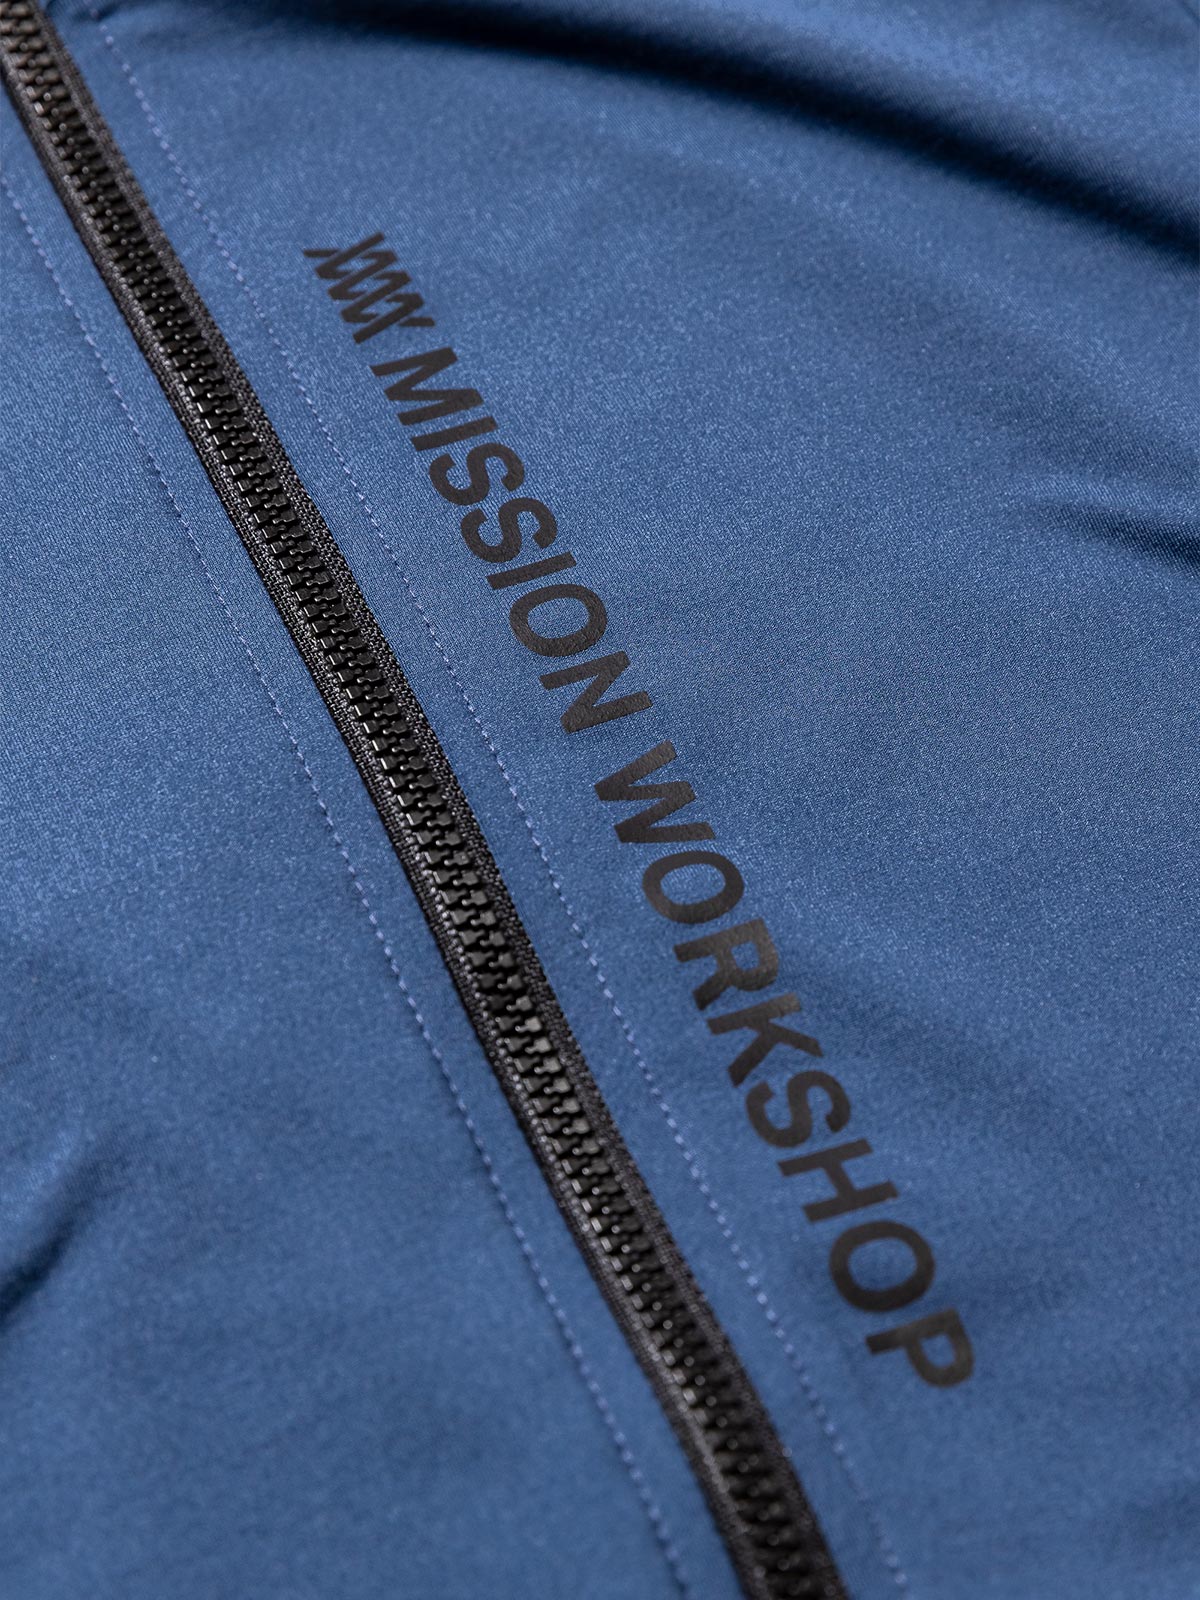 Mission Pro Jersey : LS Women's från Mission Workshop - Väskor för väderskydd och tekniska kläder - San Francisco och Los Angeles - Byggd för att tåla - Garanterad för alltid